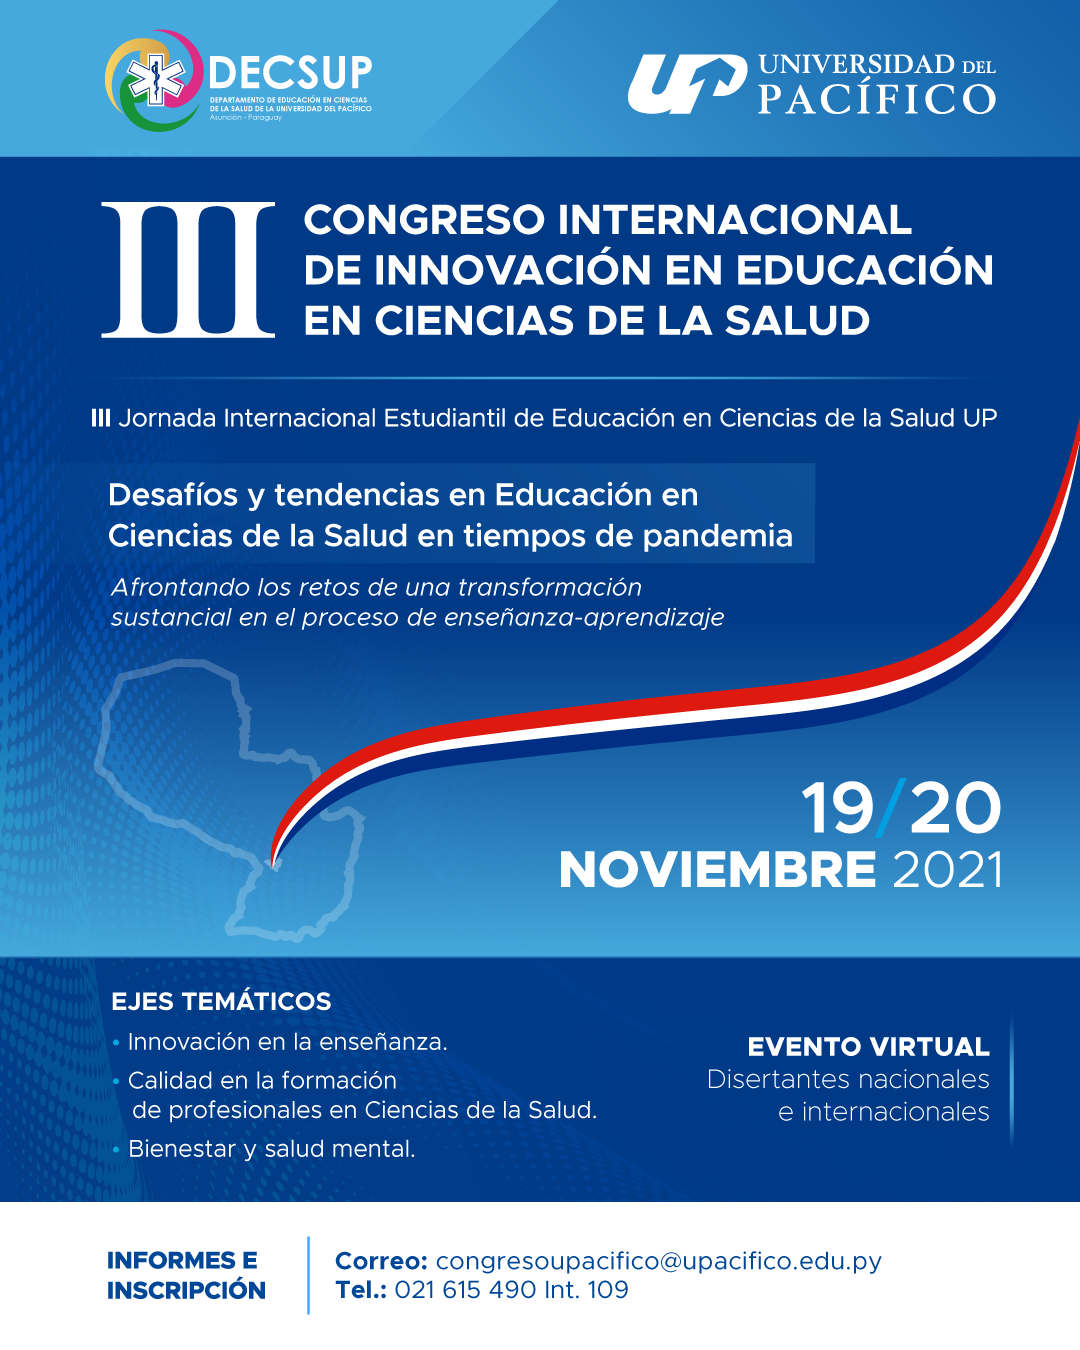 La UP invita a su tercer congreso internacional​ sobre innovación educativa en ciencias de la salud